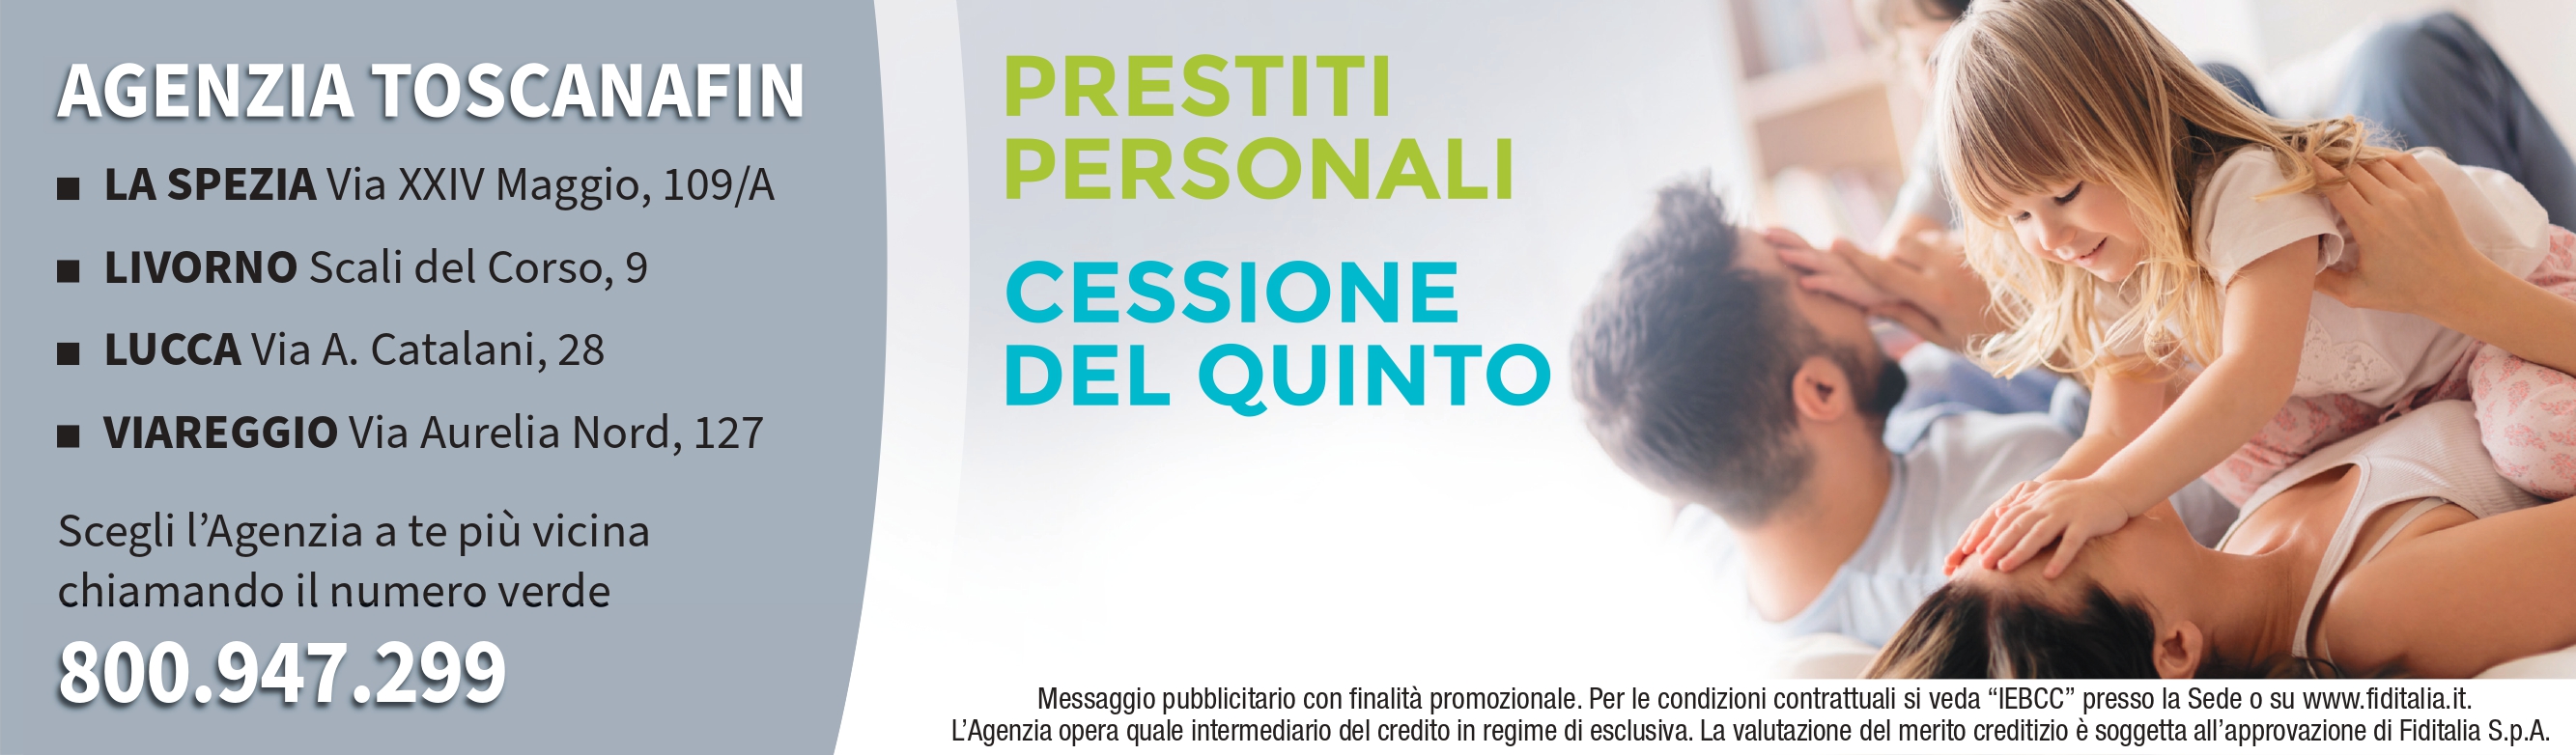 Contatti Agenzia Toscana Finanziamenti & Leasing S.r.l. filiali Fiditalia - Prestiti personali, Cessione del quinto